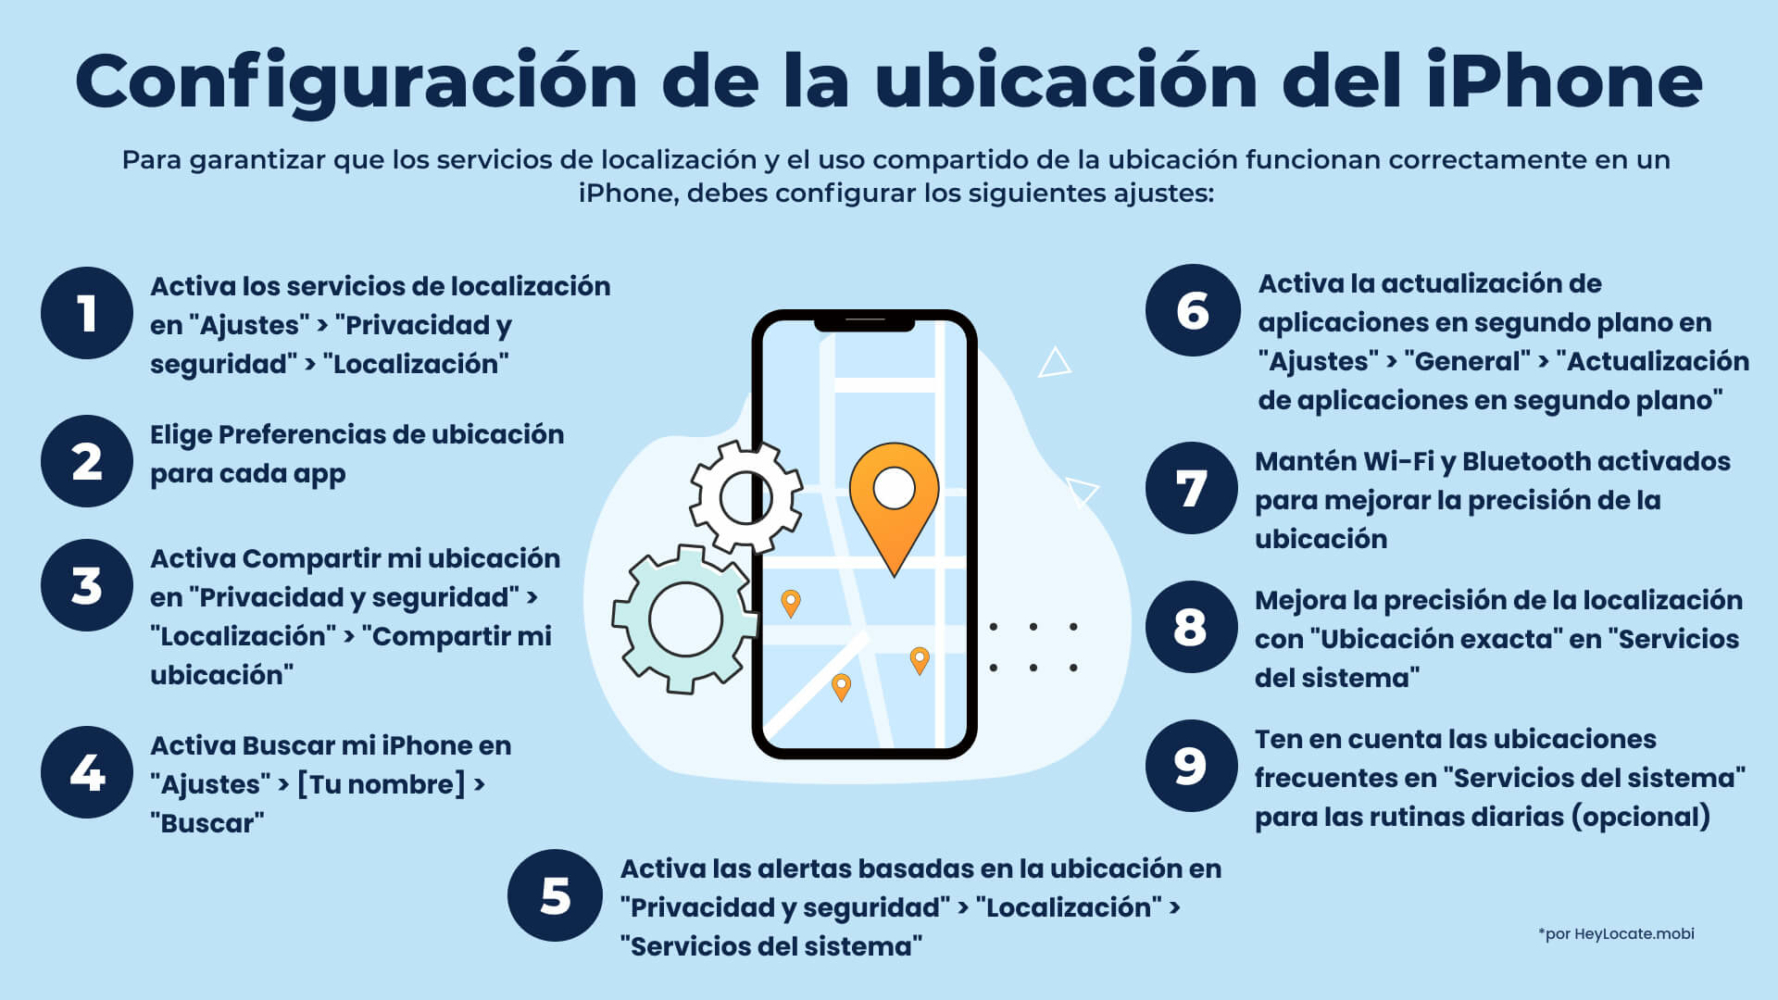 Cómo configurar los servicios de localización en iPhone - Infografía de HeyLocate